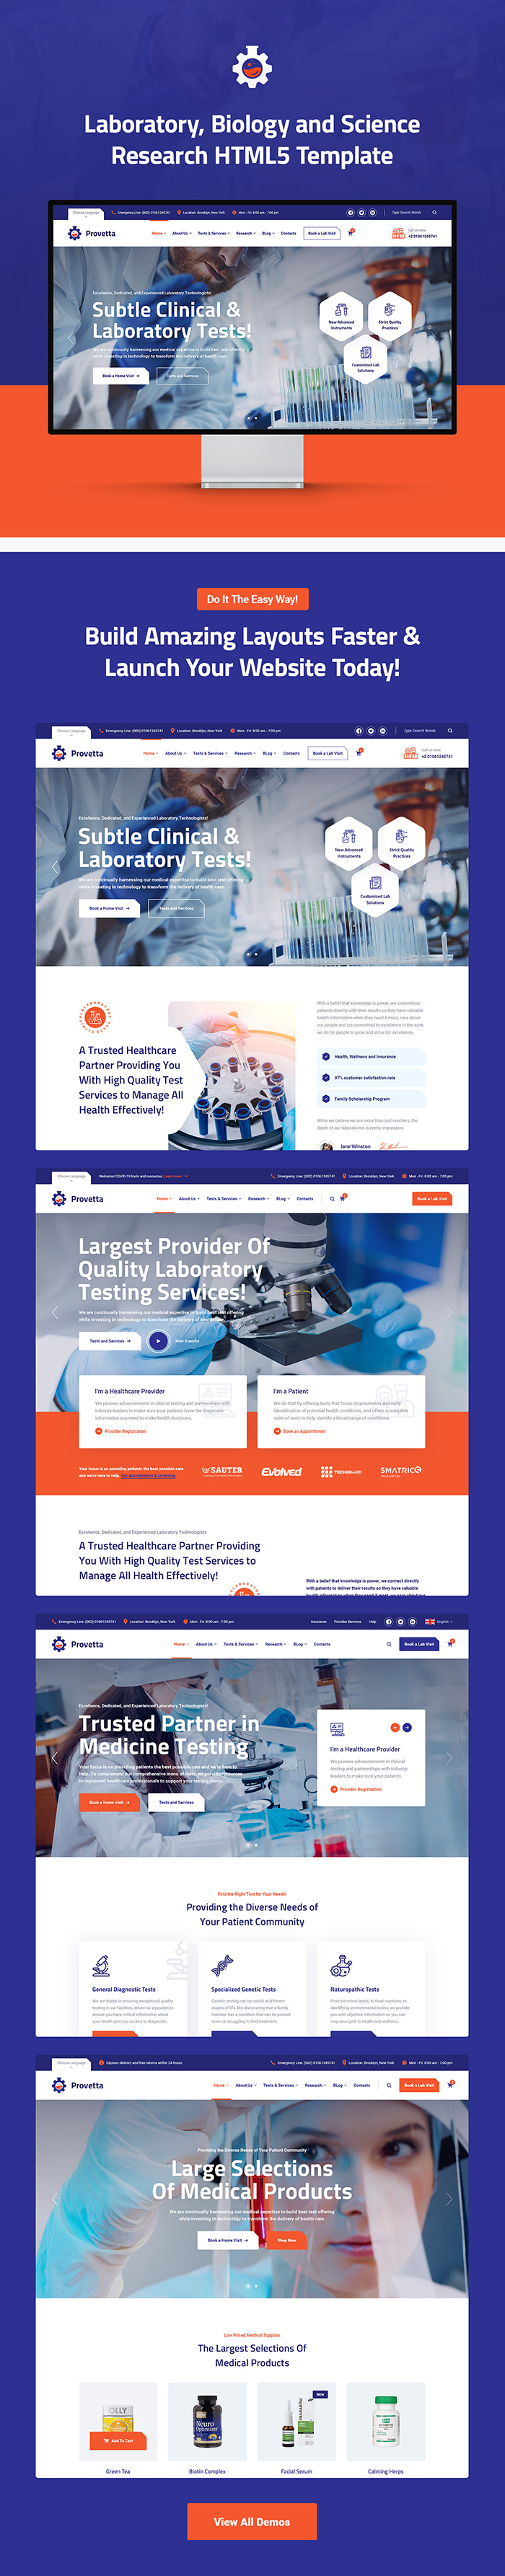 Provetta – Laboratory & Science Research HTML5 Template